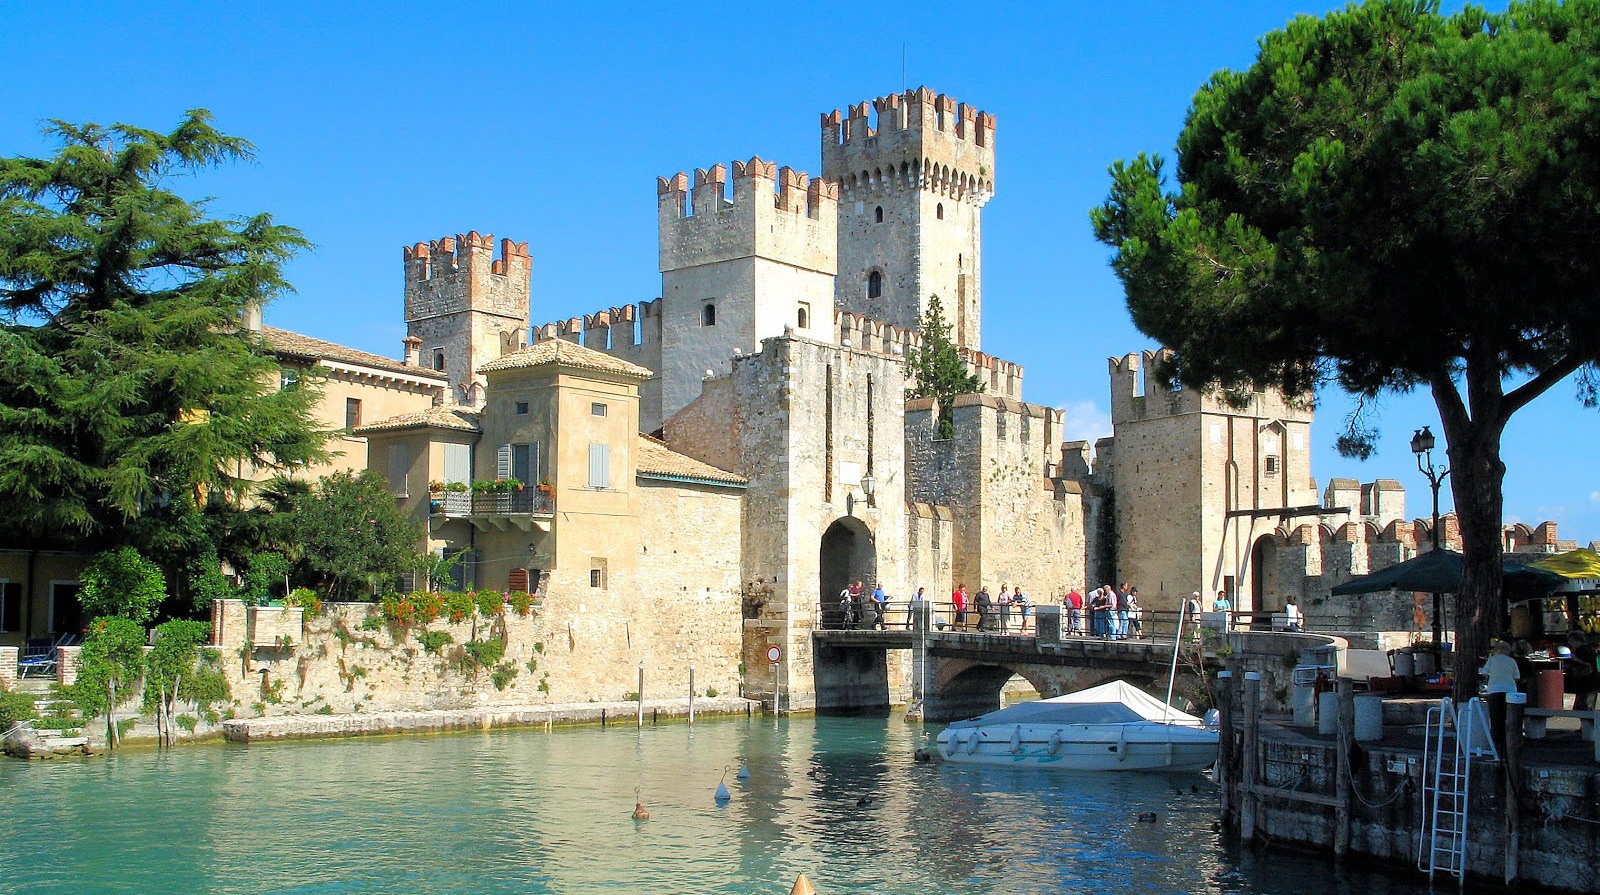 €925 - Индивидуальное путешествие на озеро Гарда, Верону, Венецию на 7 ночей с прямым перелетом и арендой авто